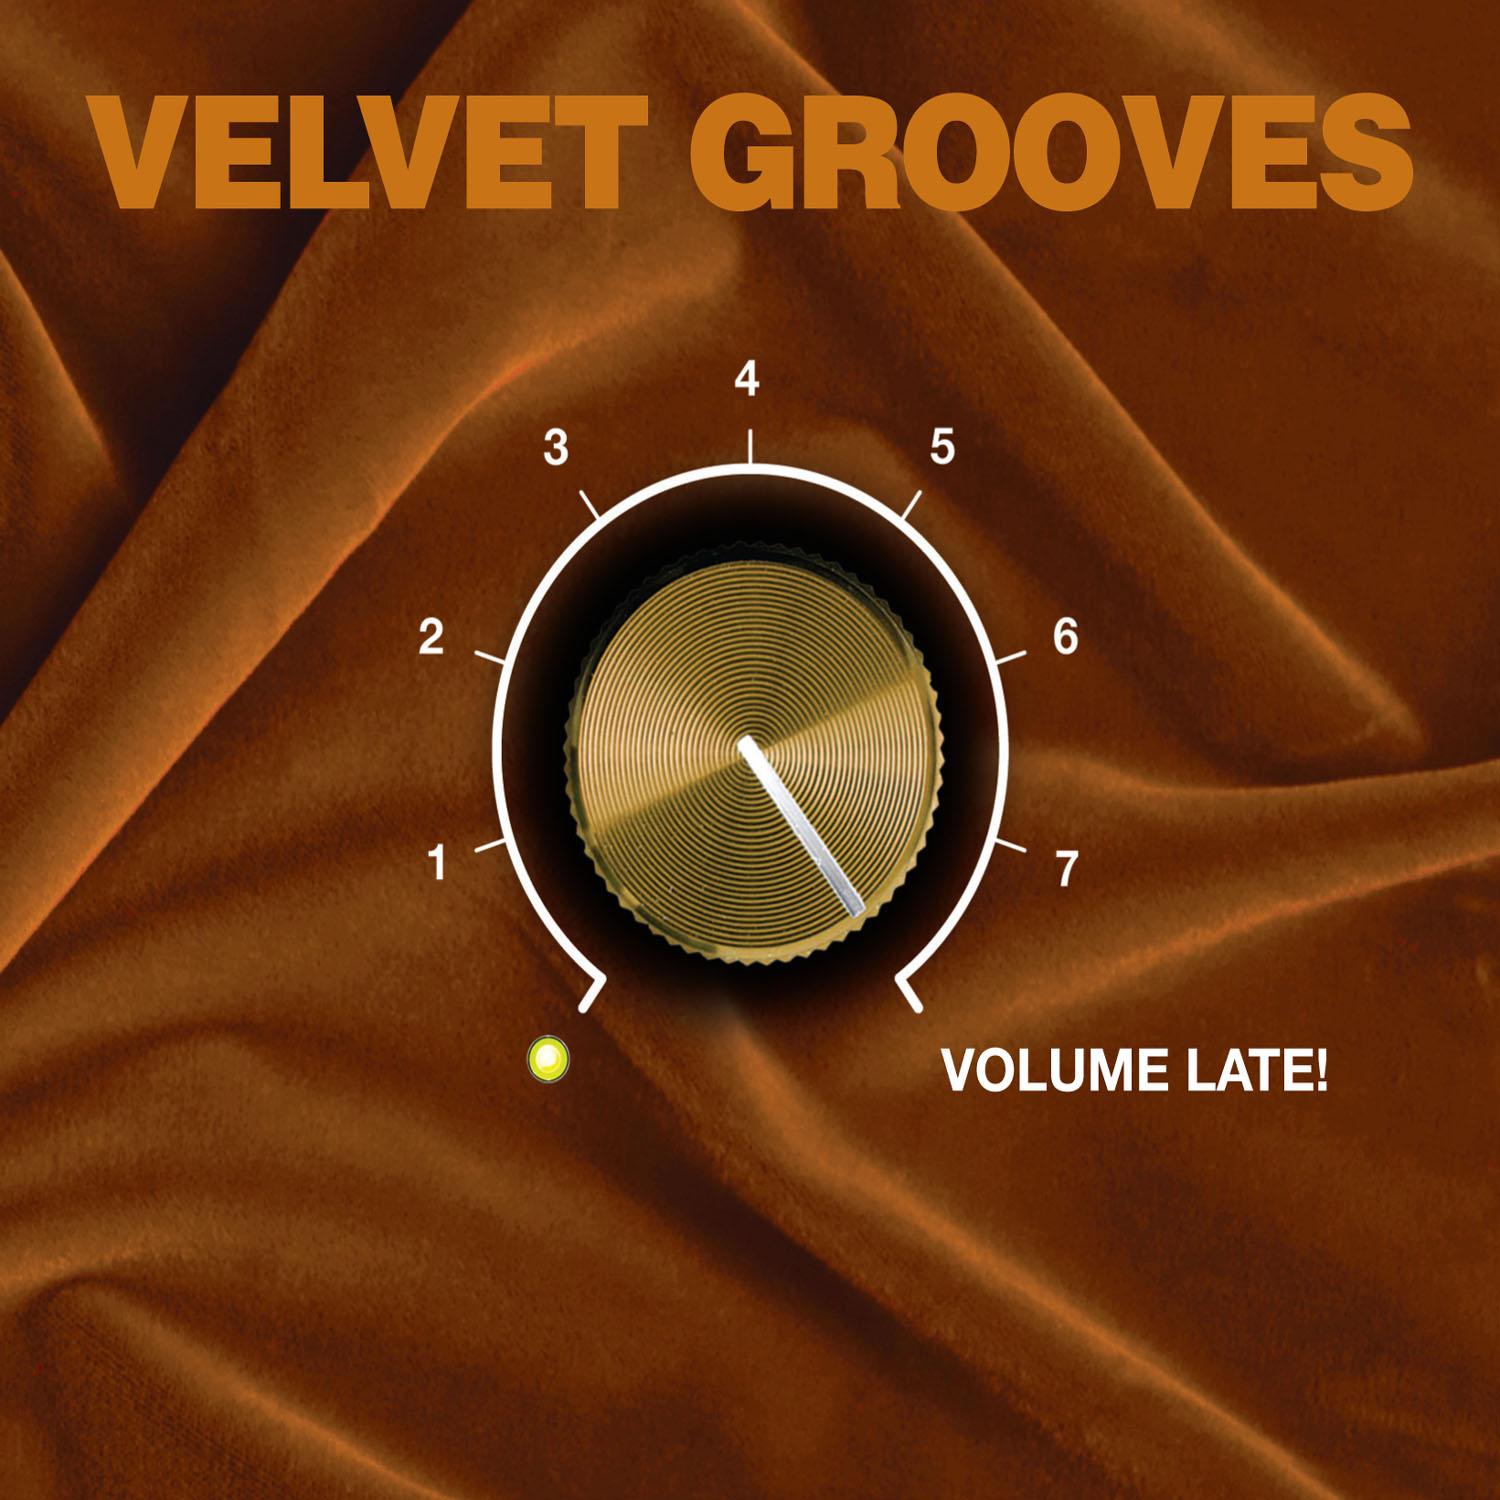 Velvet Grooves Volume Late!